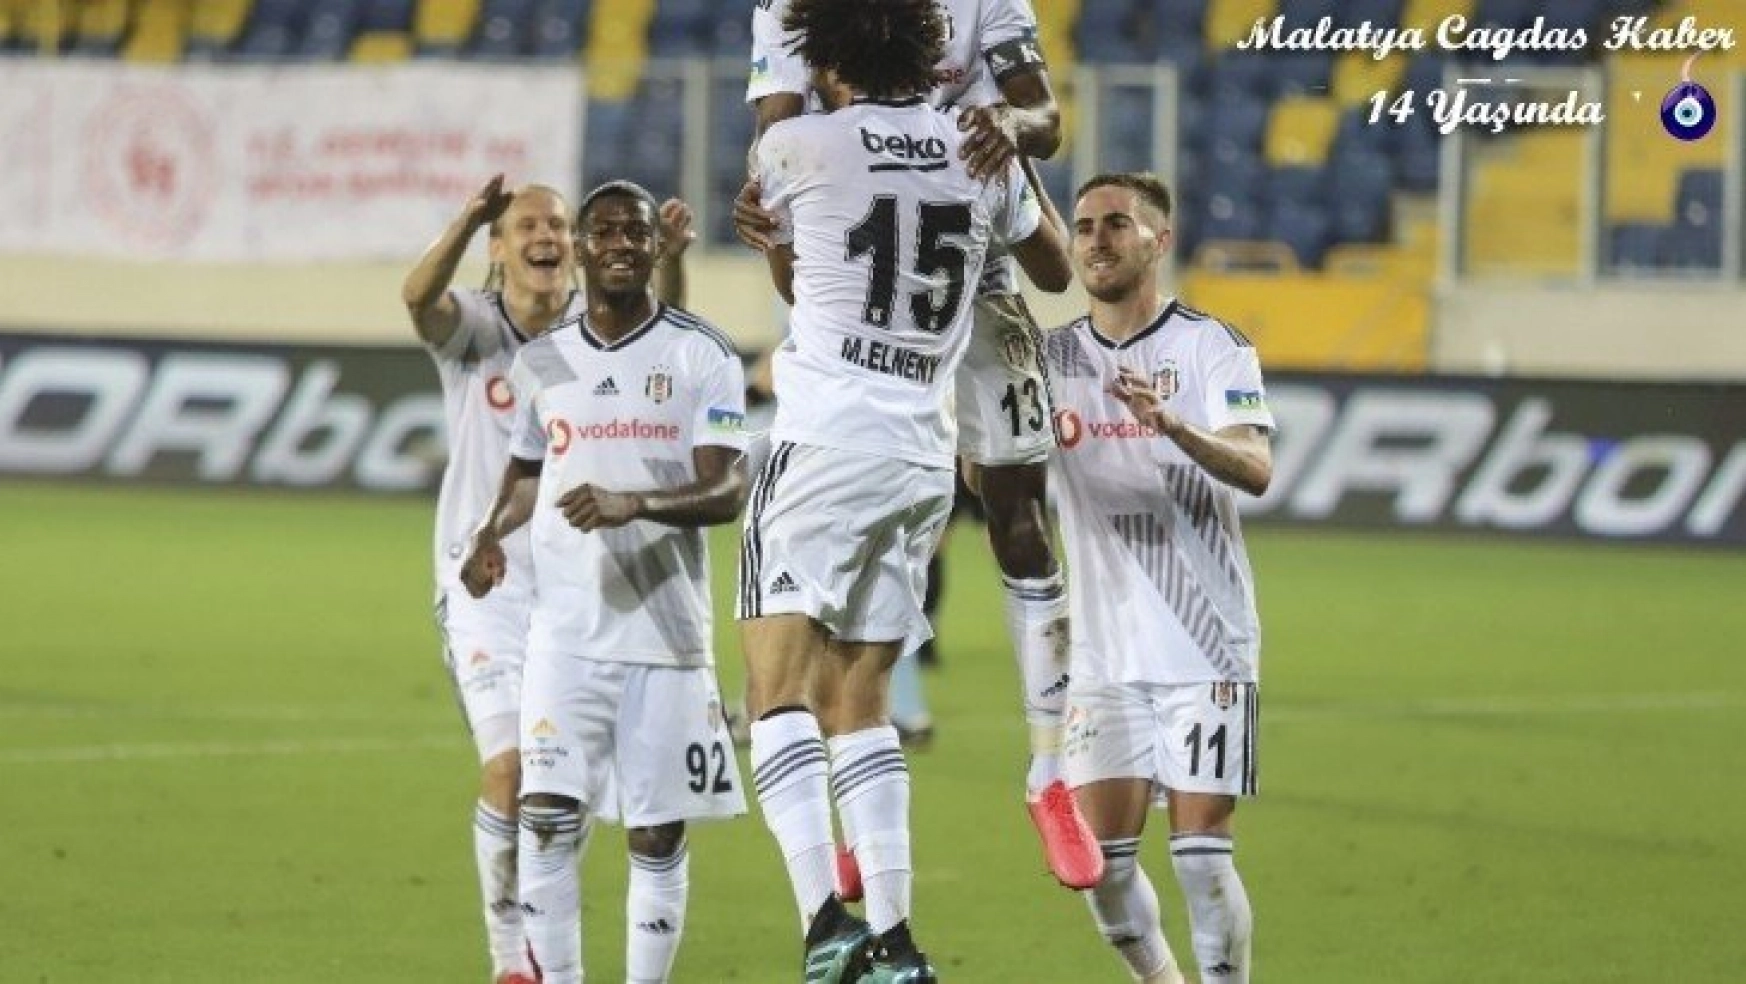 Gençlerbirliği: 0 Beşiktaş: 3